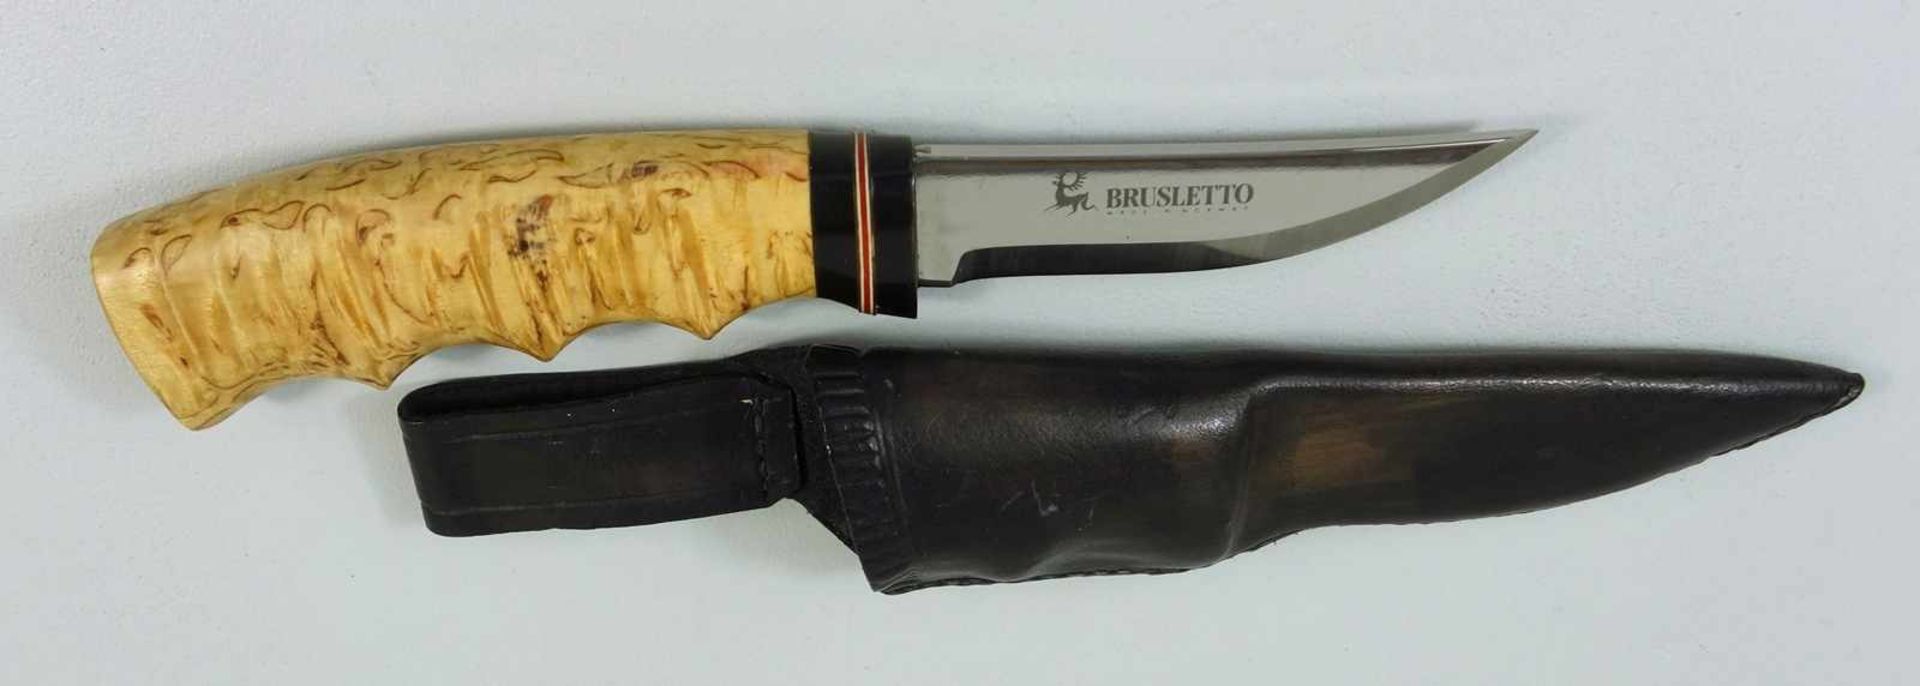 Outdoor-/ Jagdmesser, Brusletto, Norwegen, Holzgriff mit Griffmulden, Gesamt-L.20,5cm, Klingen-L.8,